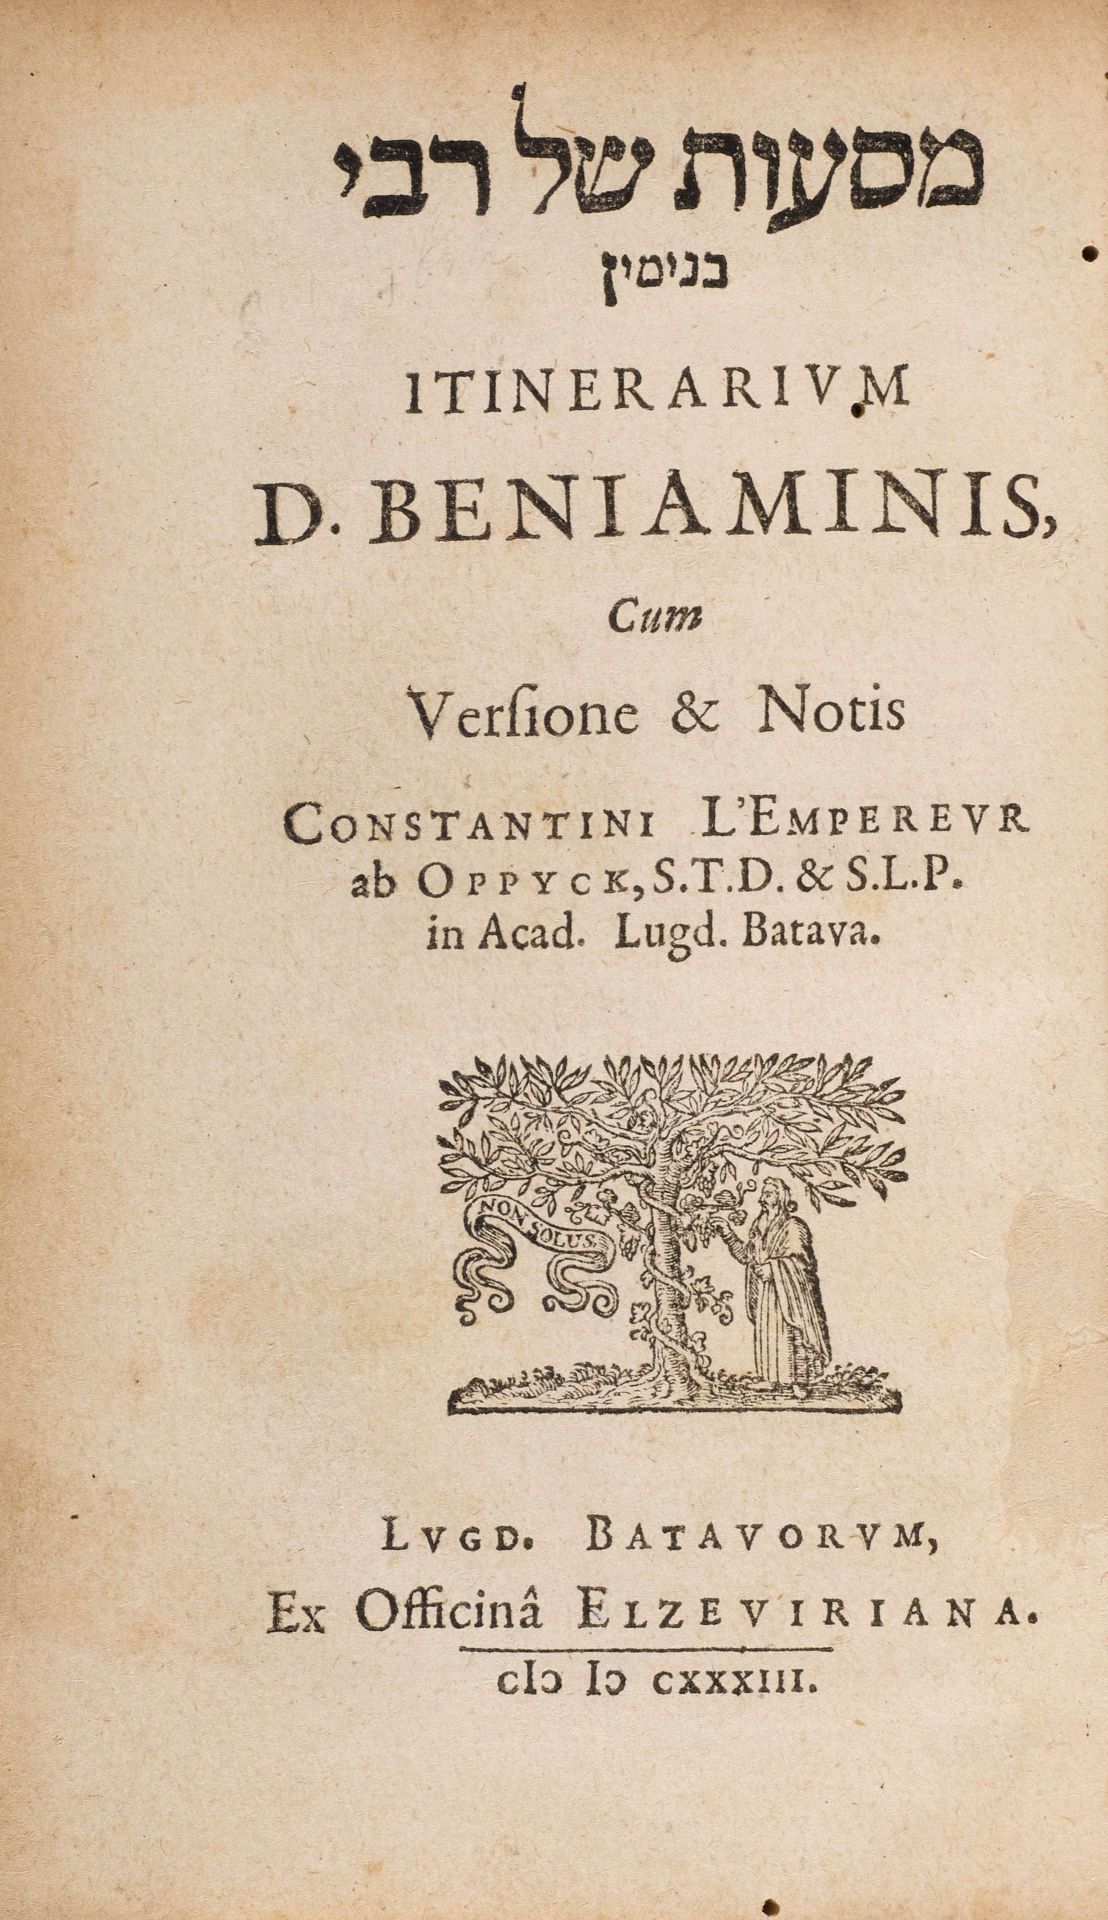 JUDAICA -Benjamin von Tudela.Initerarium D. Beniaminis cum Versione & Notis.Leiden, Elzevier,